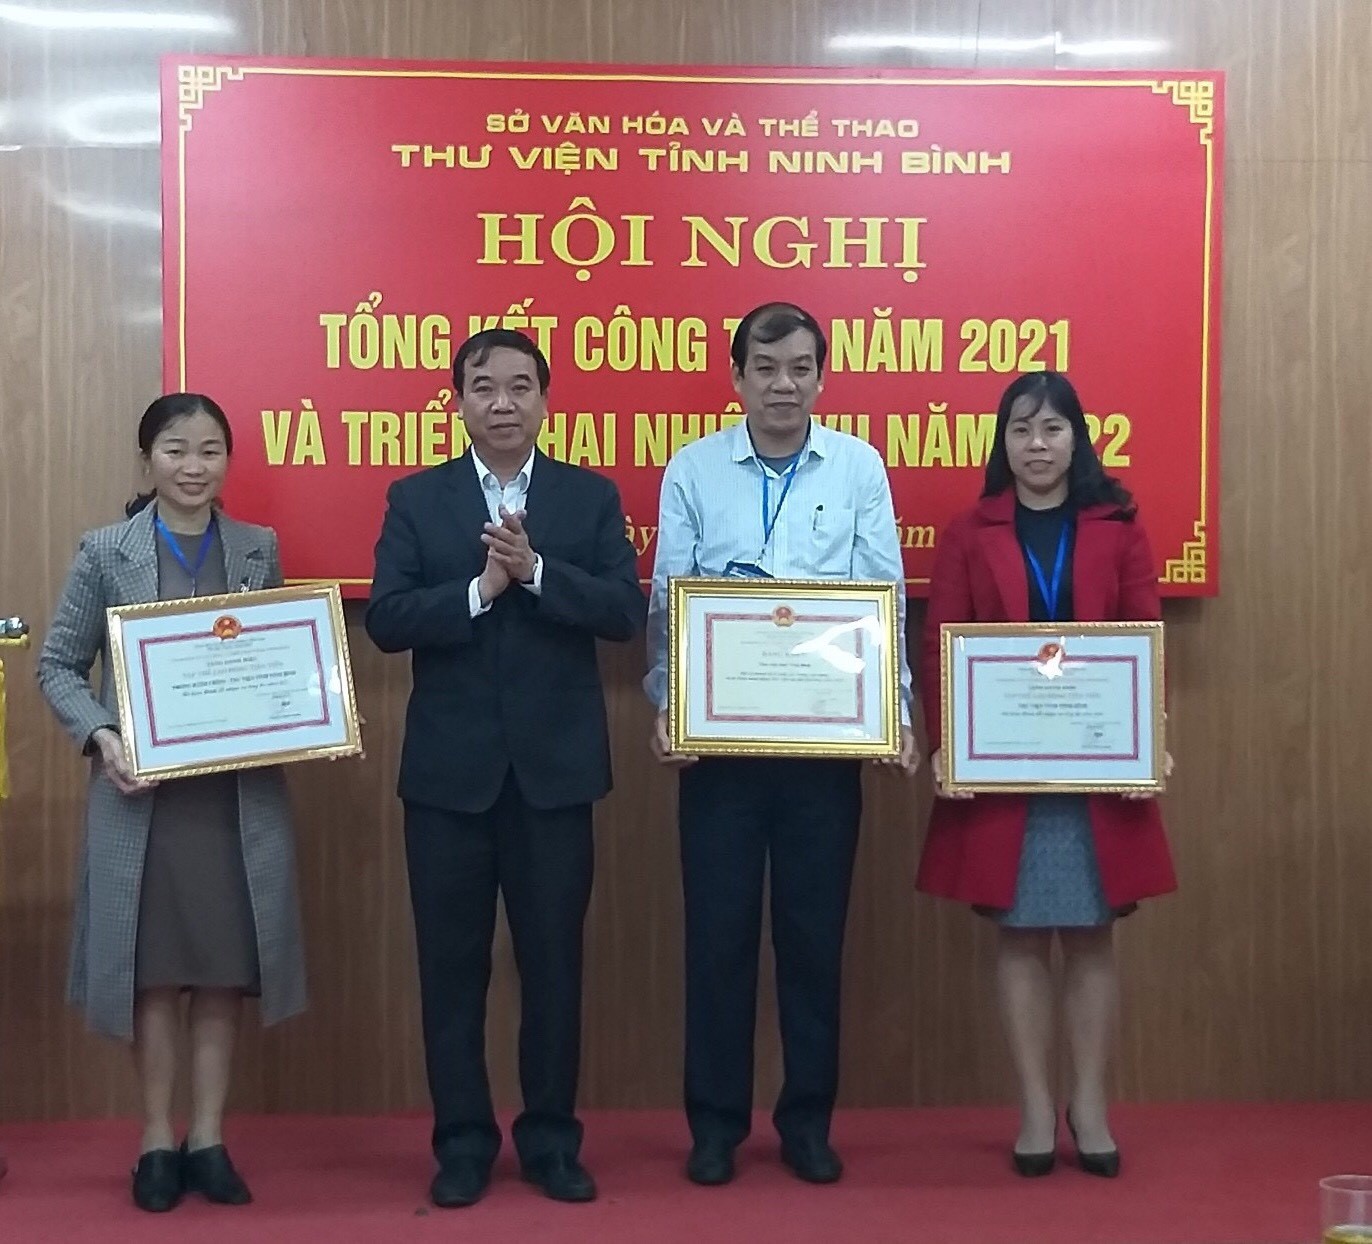 Thư viện tỉnh Ninh Bình tổ chức hội nghị Tổng kết công tác năm 2021 và triển khai nhiệm vụ năm 2022